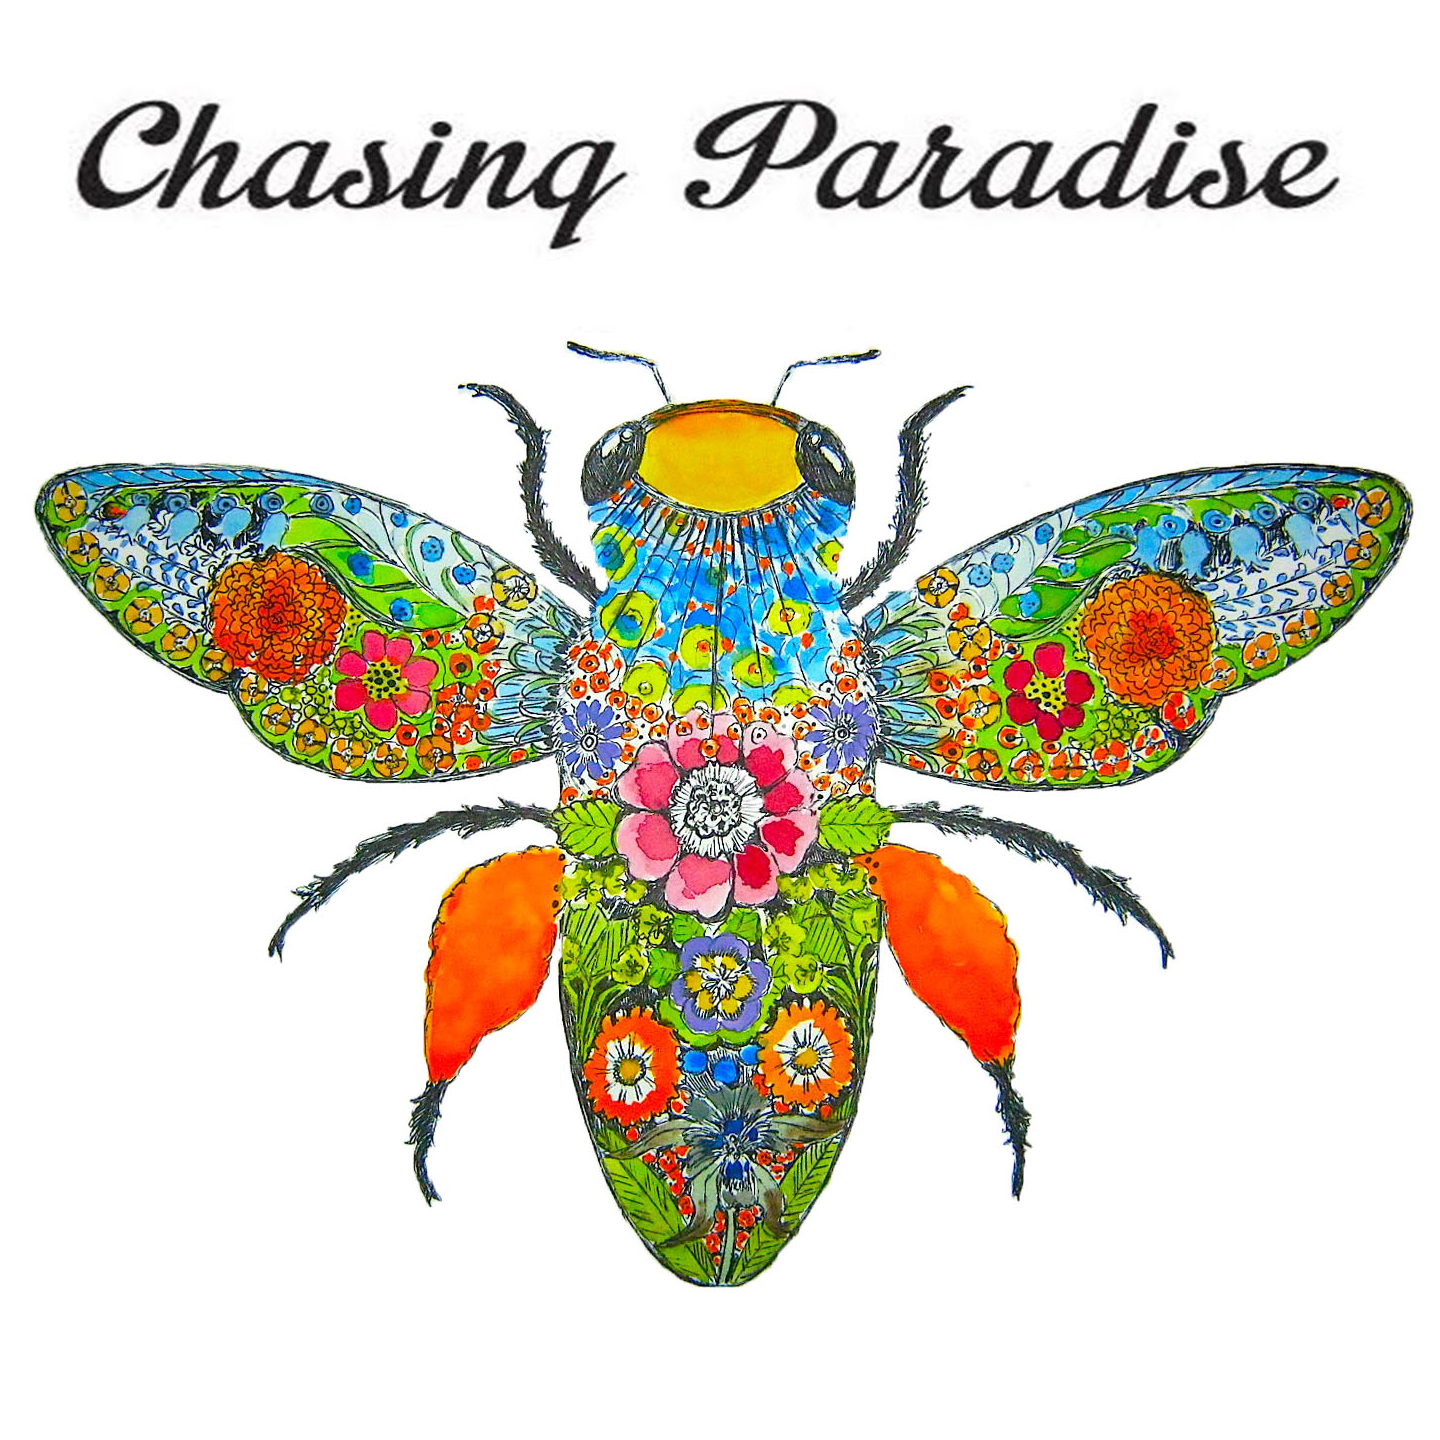 Chasing Paradise